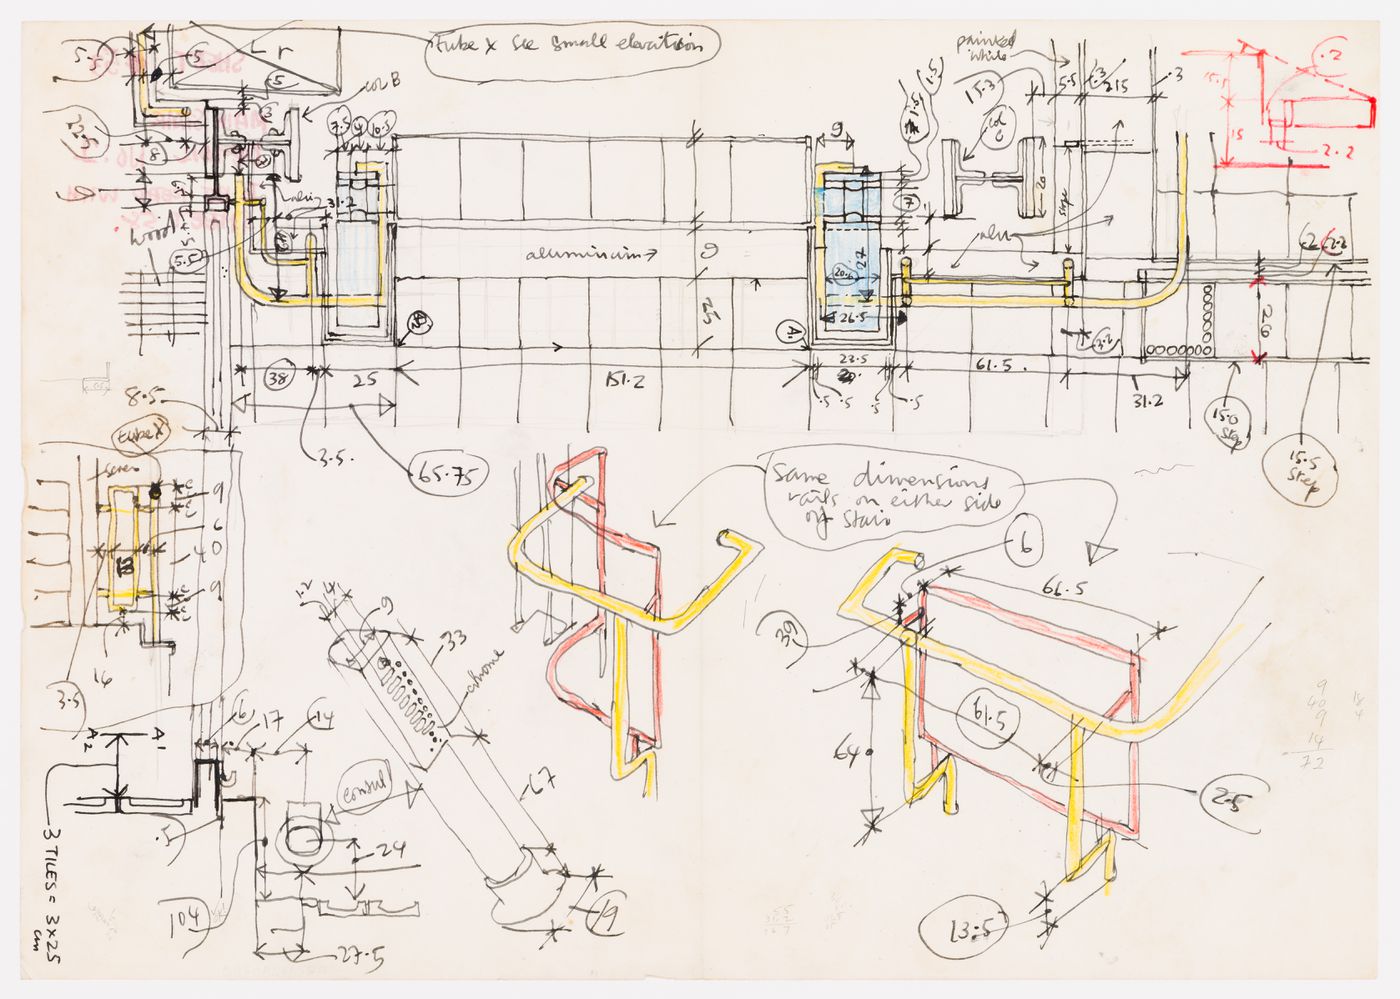 Measured sketches of the Maison de verre, Paris, France